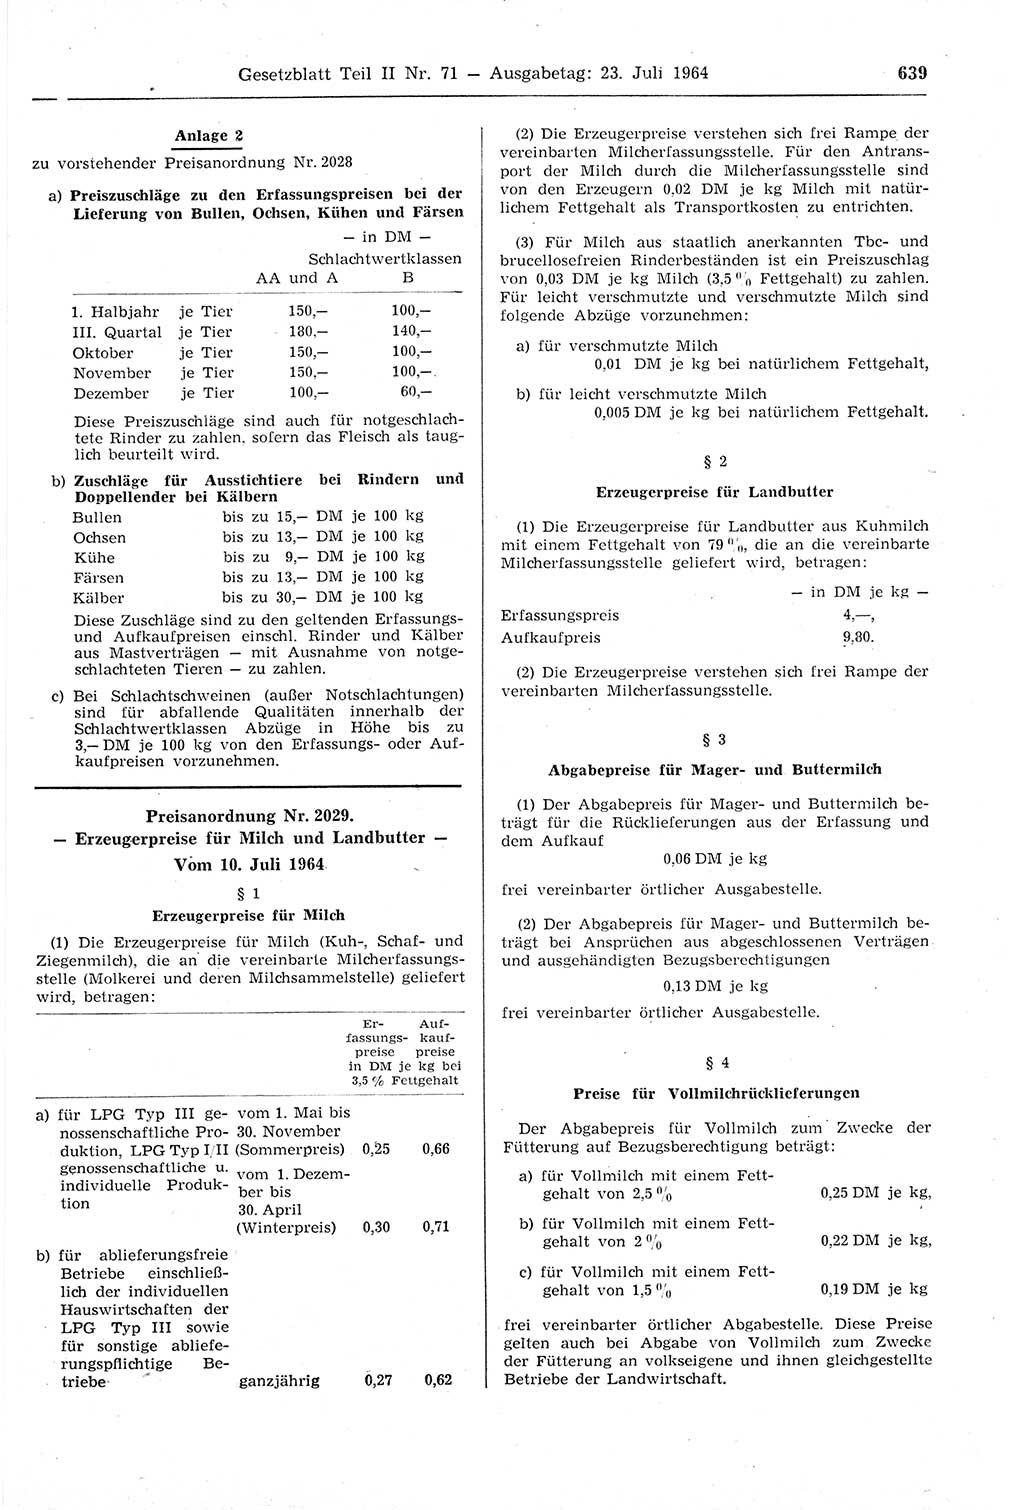 Gesetzblatt (GBl.) der Deutschen Demokratischen Republik (DDR) Teil ⅠⅠ 1964, Seite 639 (GBl. DDR ⅠⅠ 1964, S. 639)